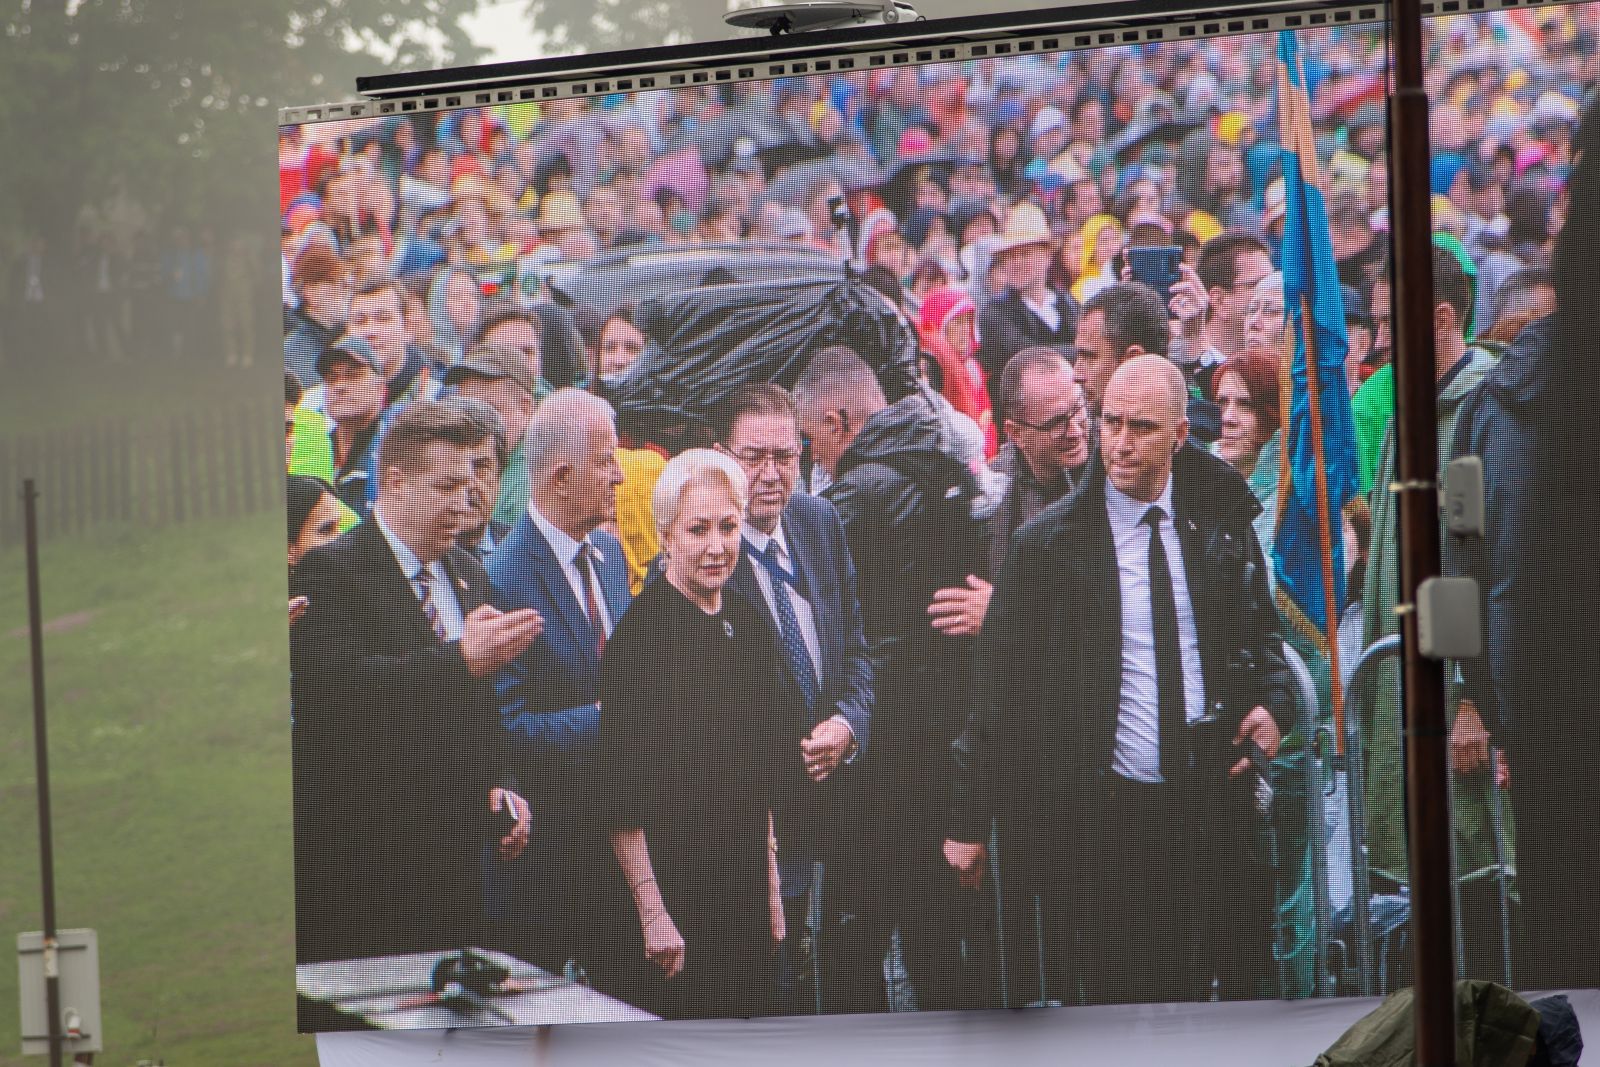 A jelenlévők óriási kivetítőkön is követhették az eseményeket, így azt is láthatták, ahogy Románia miniszterelnöke, Viorica Dăncilă megérkezik a helyszínre. A miniszterelnök szűk kíséretével vett részt a pápai szentmisén.